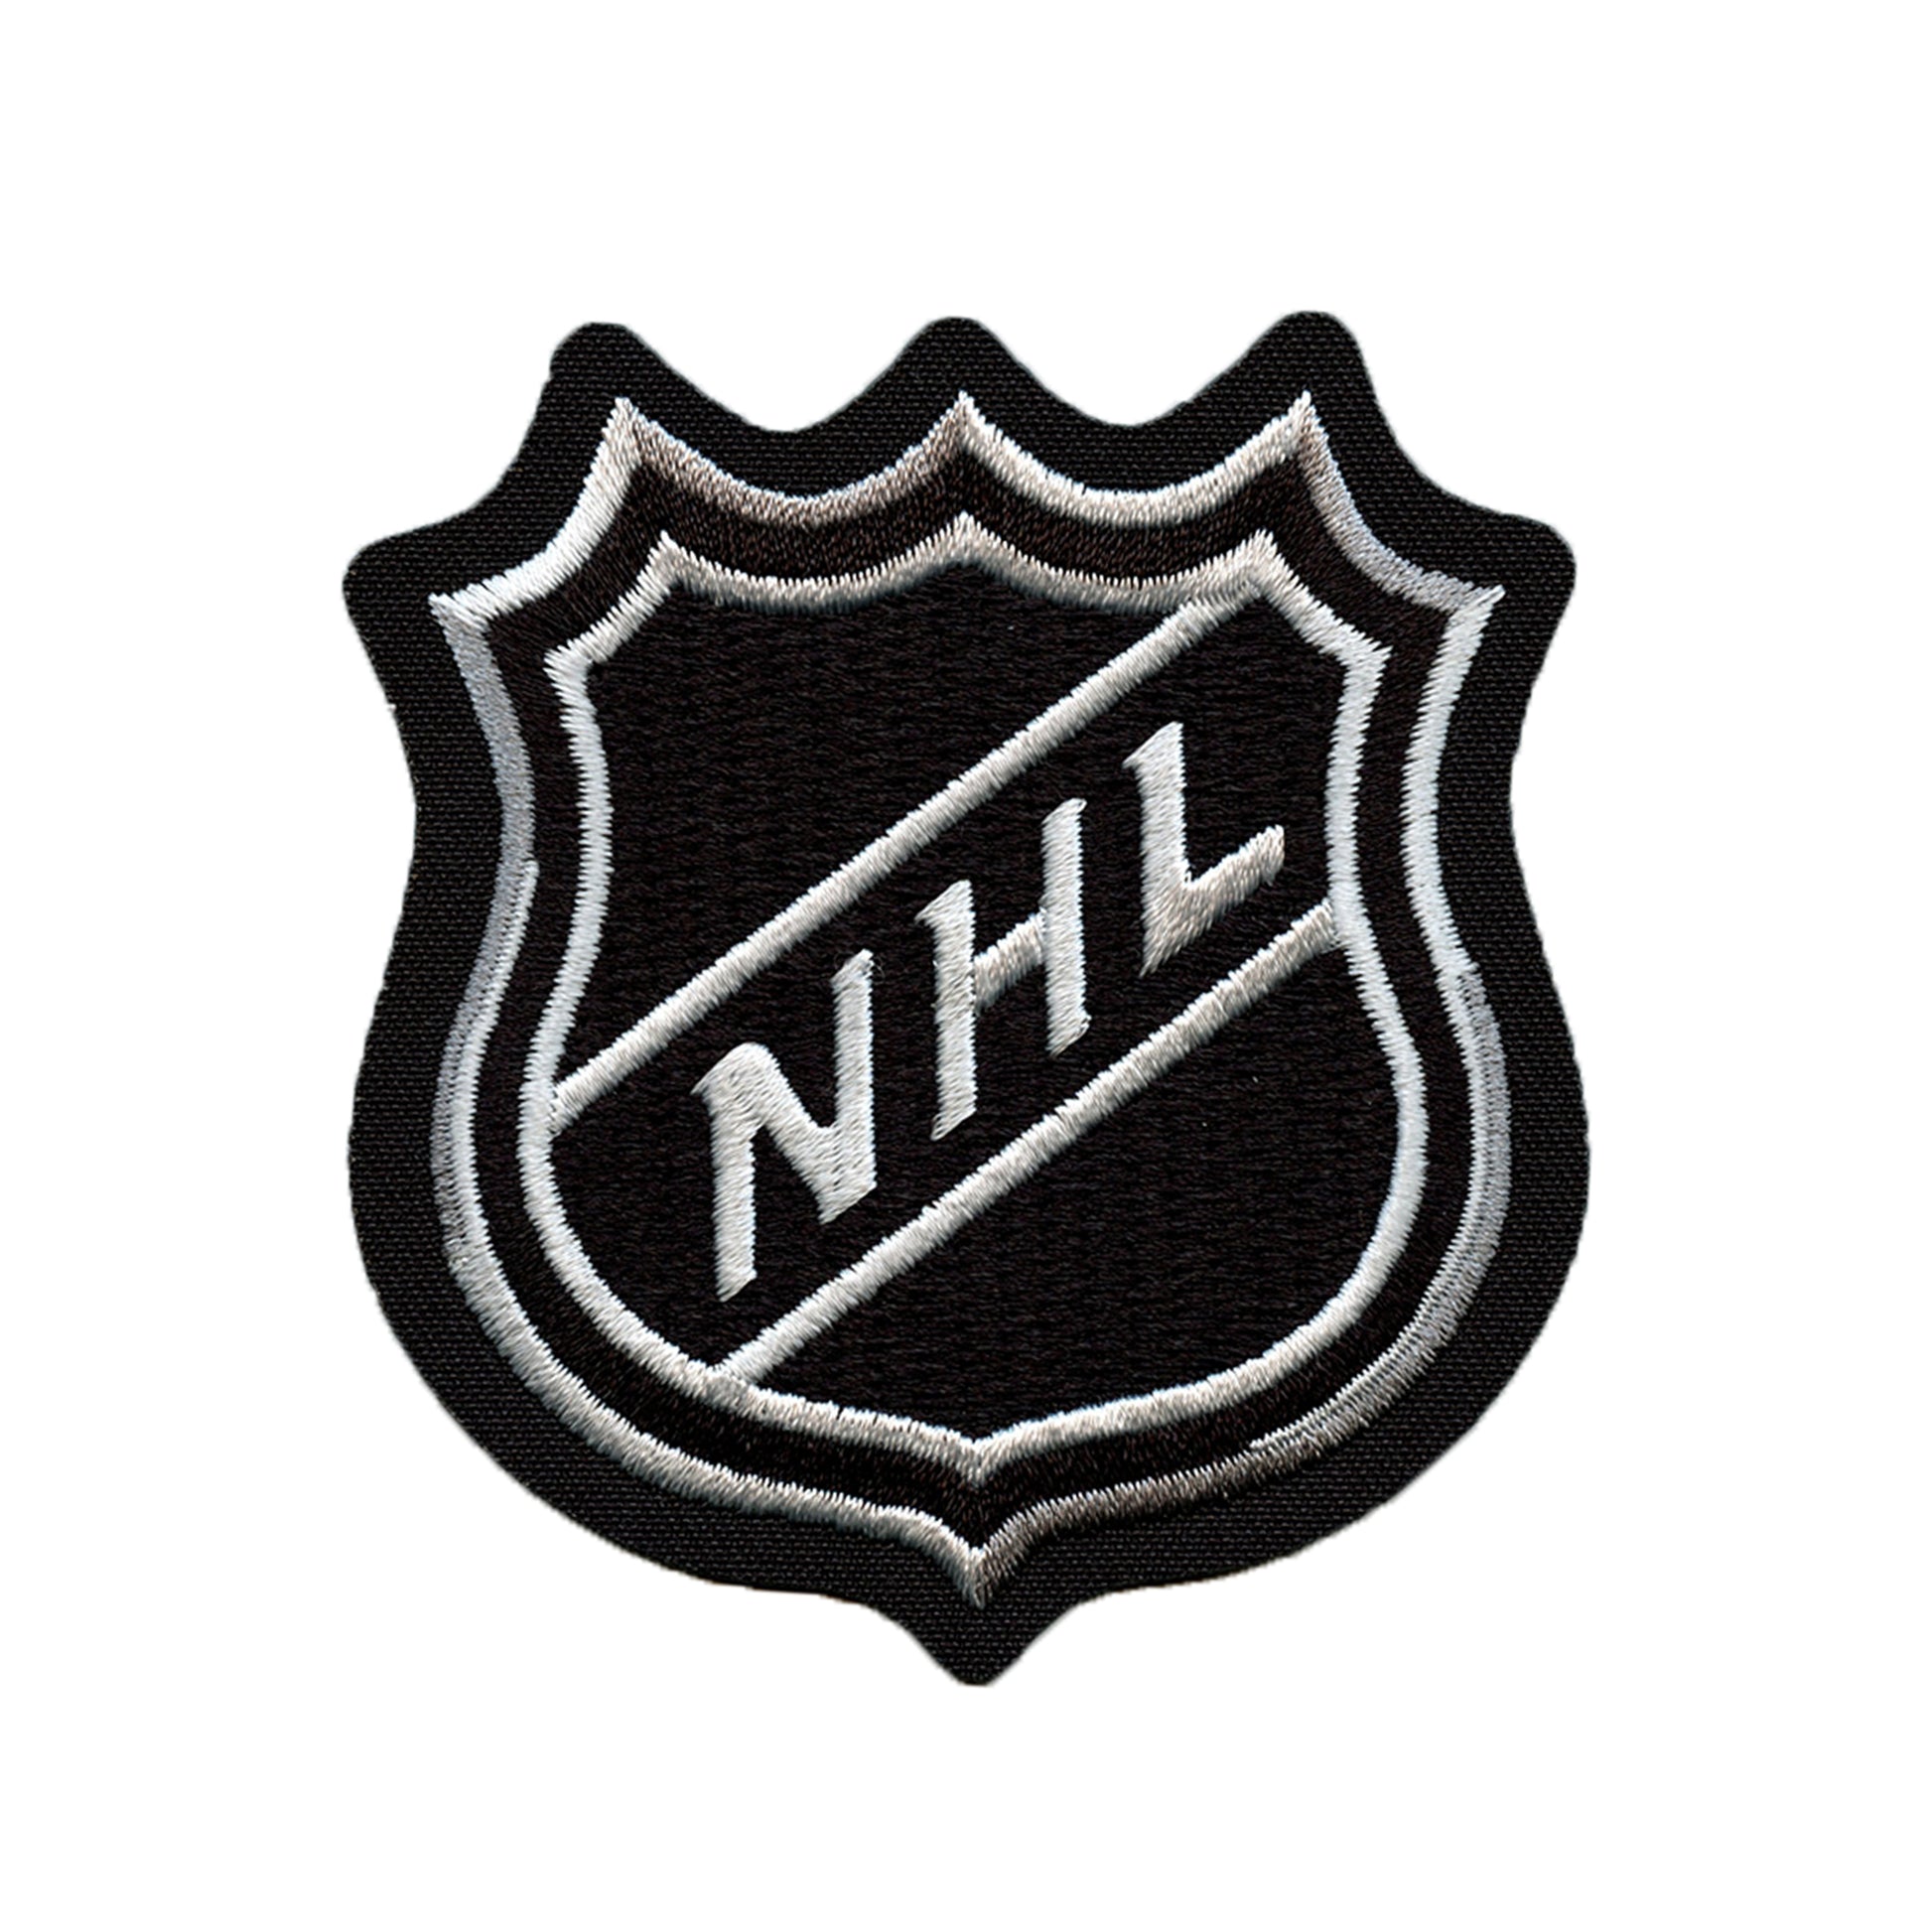 Toronto Maple Leafs Dark Uniform - National Hockey League (NHL